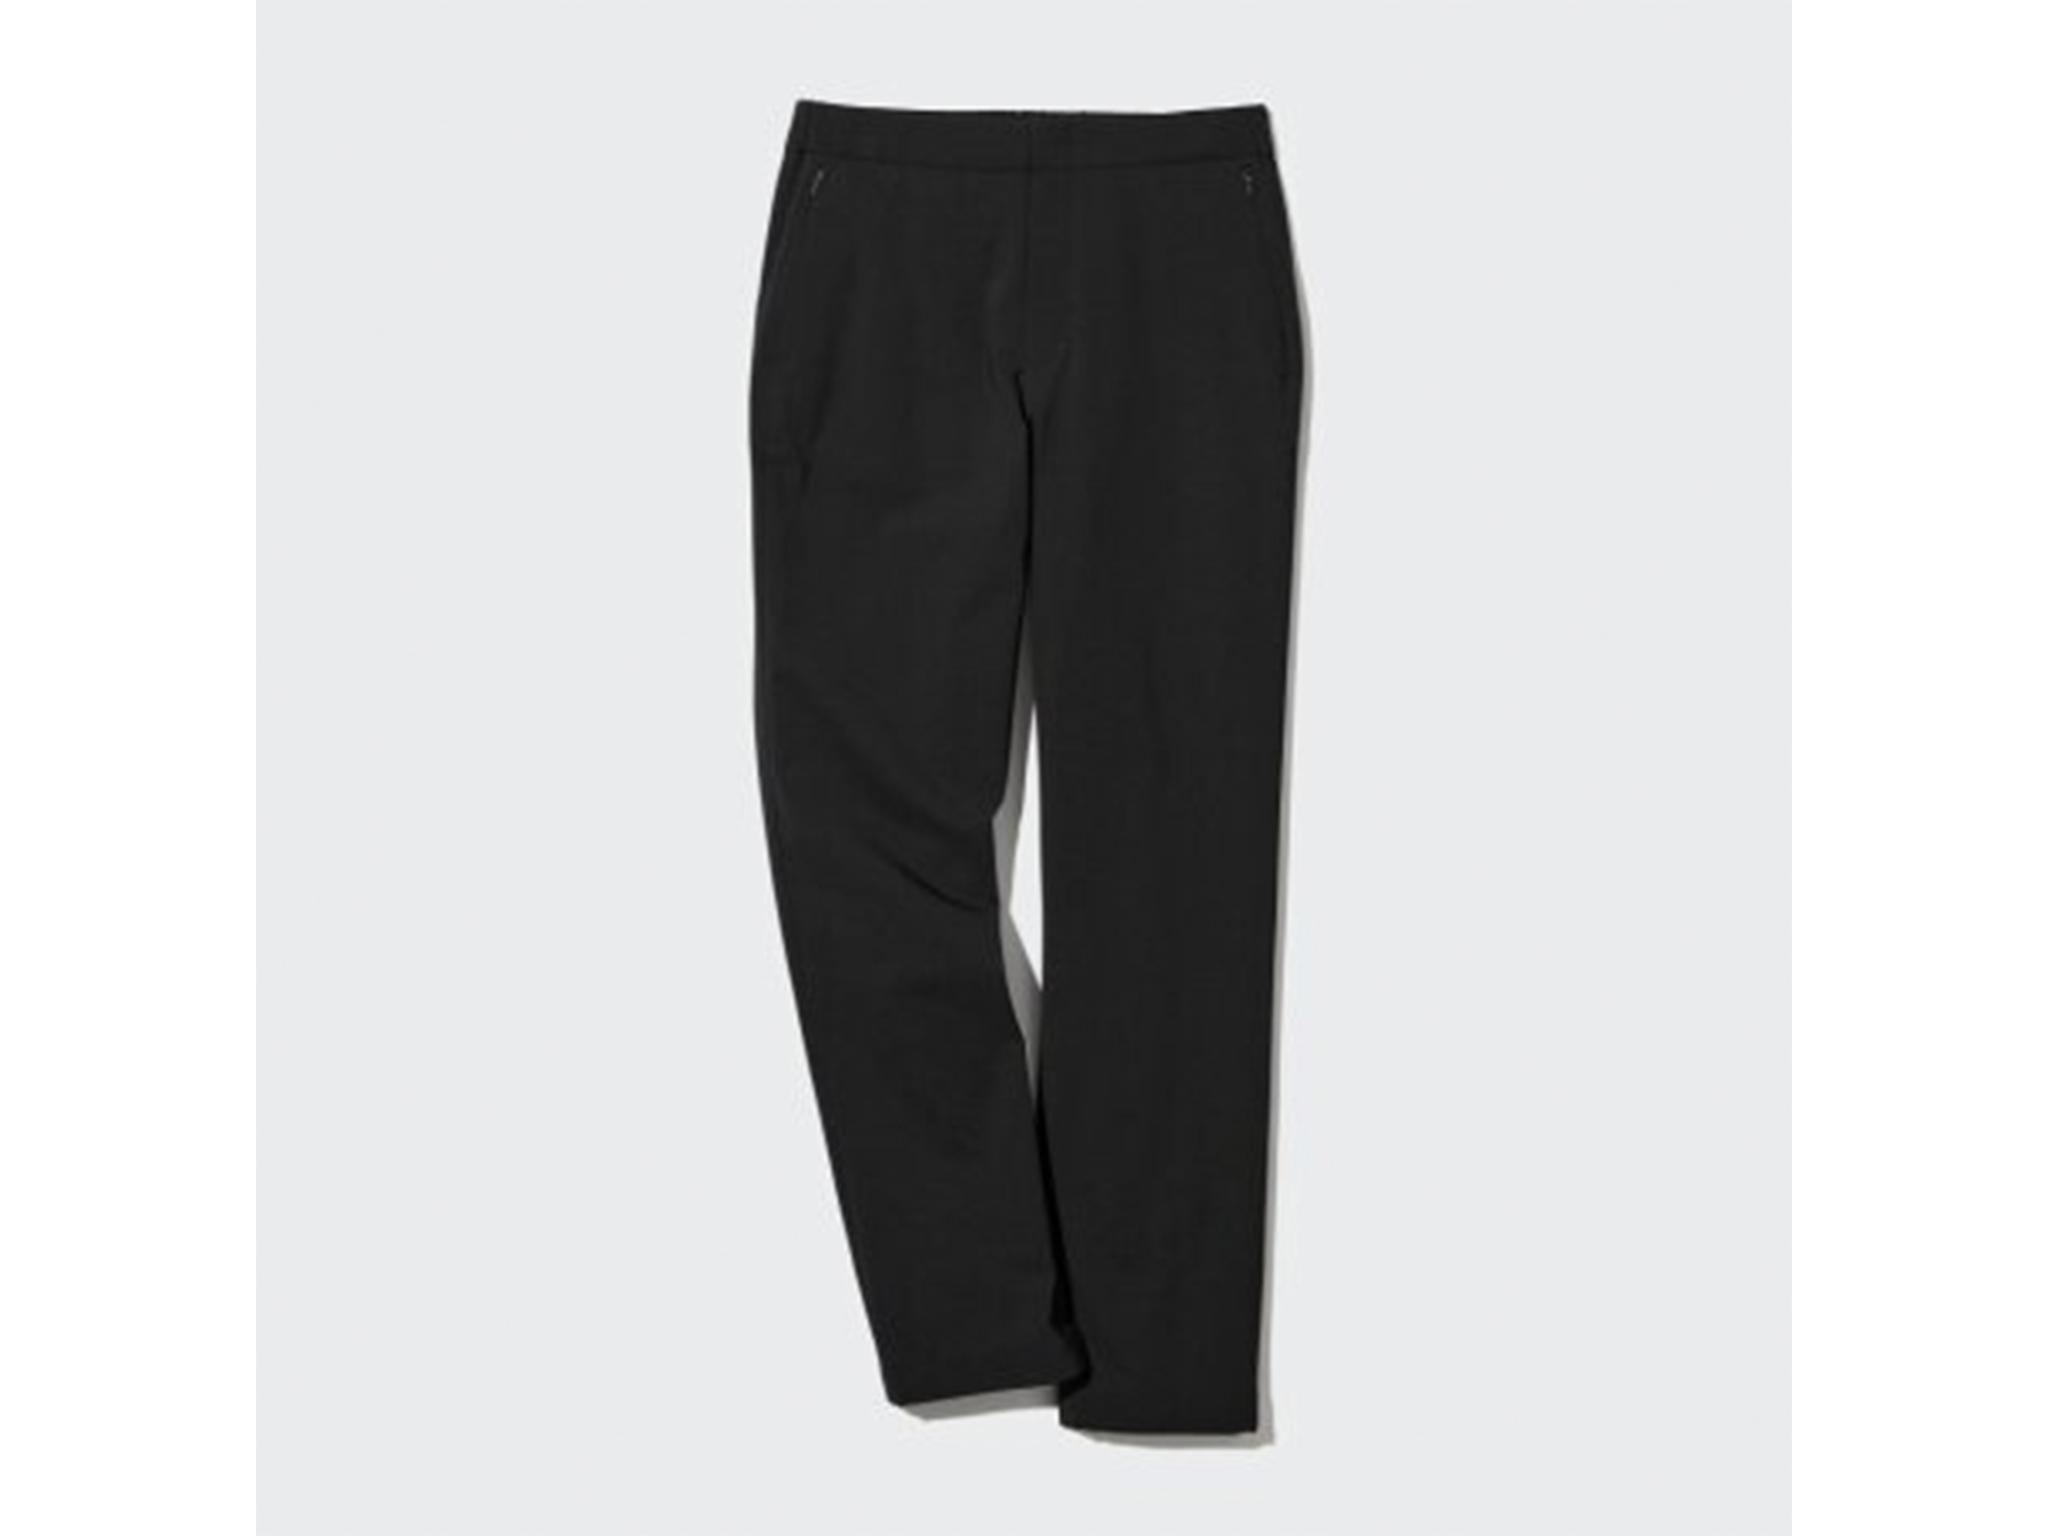 Uniqlo Heattech warm lined trousers 